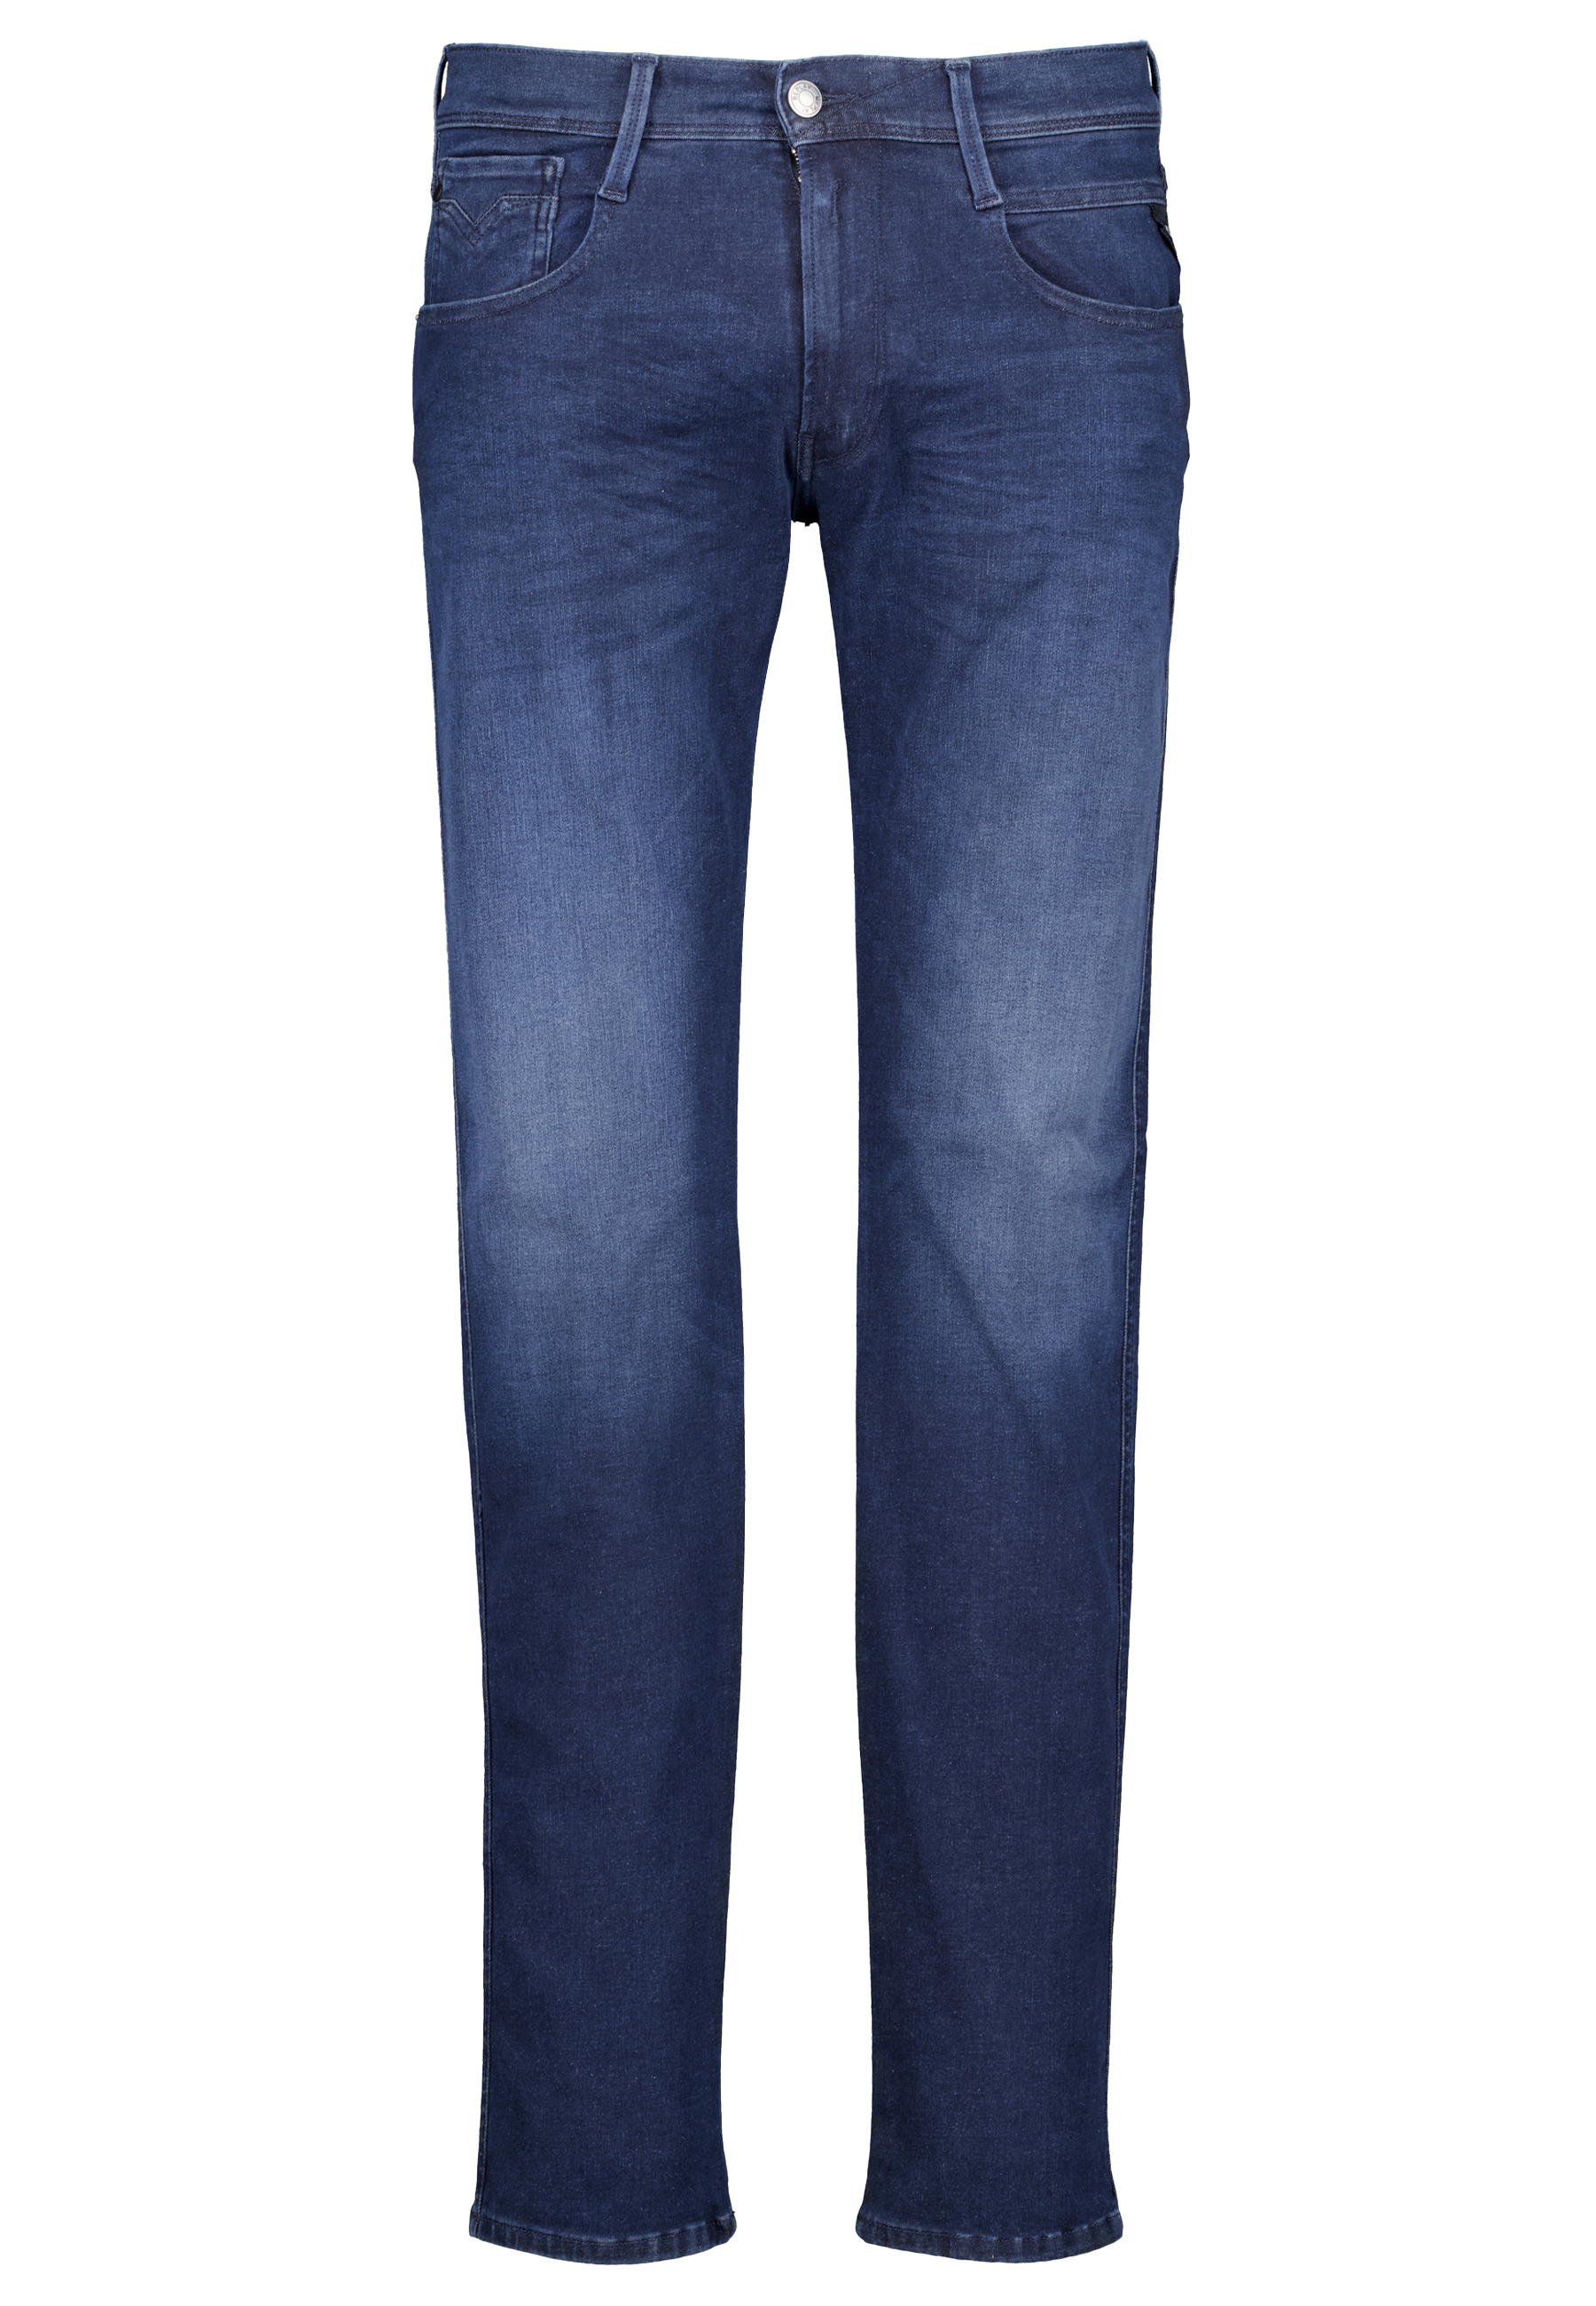 Replay jeans blauw Heren maat 31/34